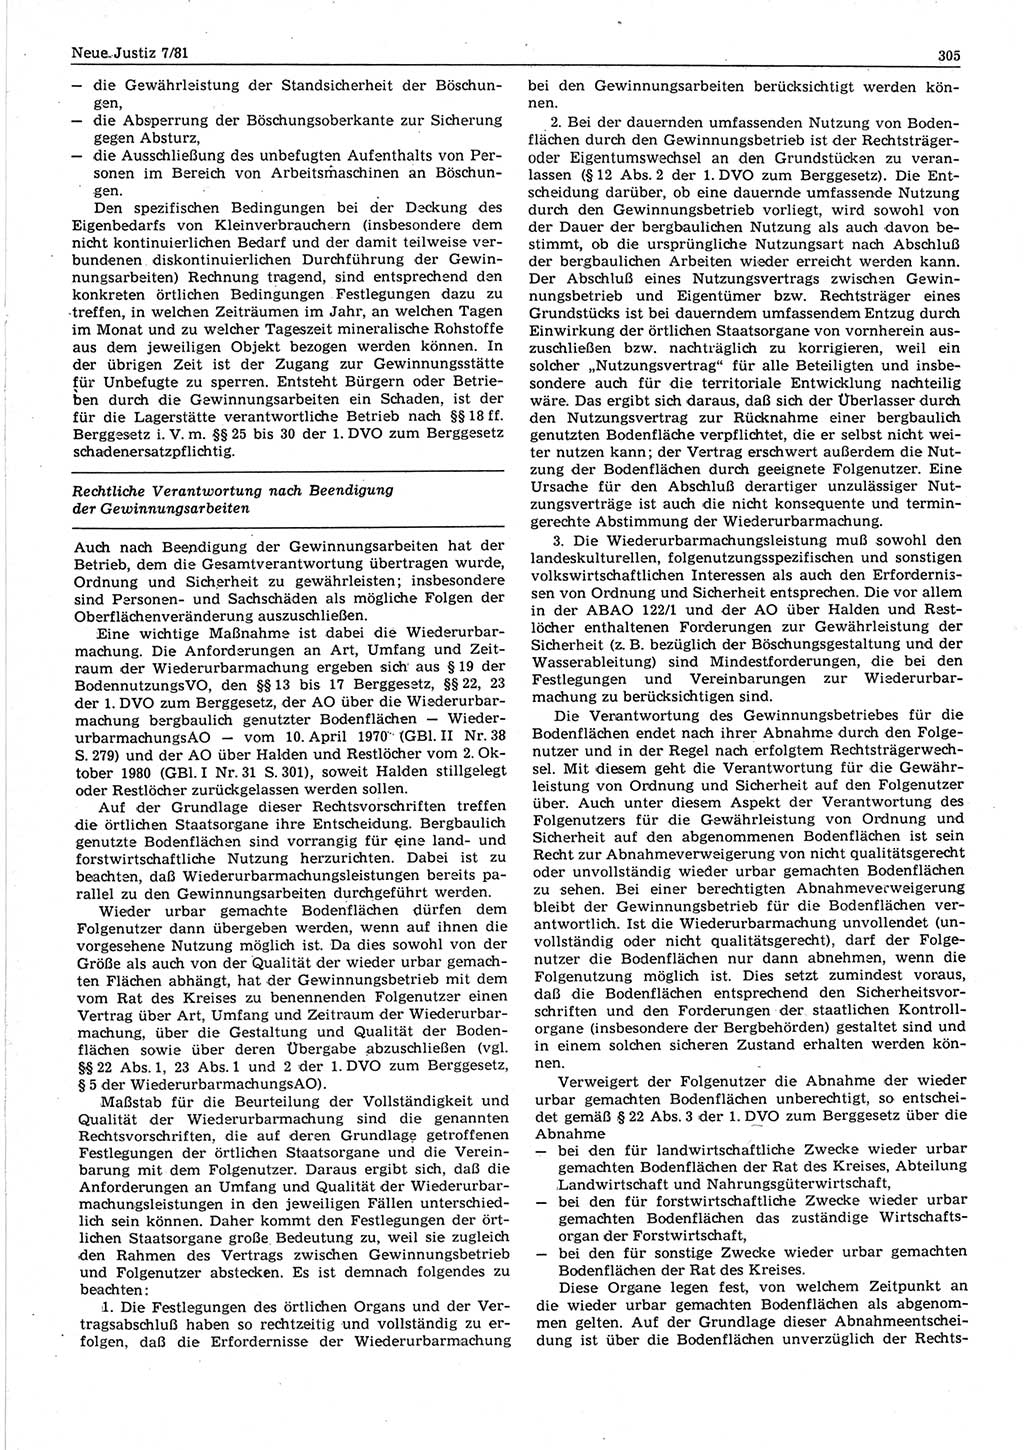 Neue Justiz (NJ), Zeitschrift für sozialistisches Recht und Gesetzlichkeit [Deutsche Demokratische Republik (DDR)], 35. Jahrgang 1981, Seite 305 (NJ DDR 1981, S. 305)